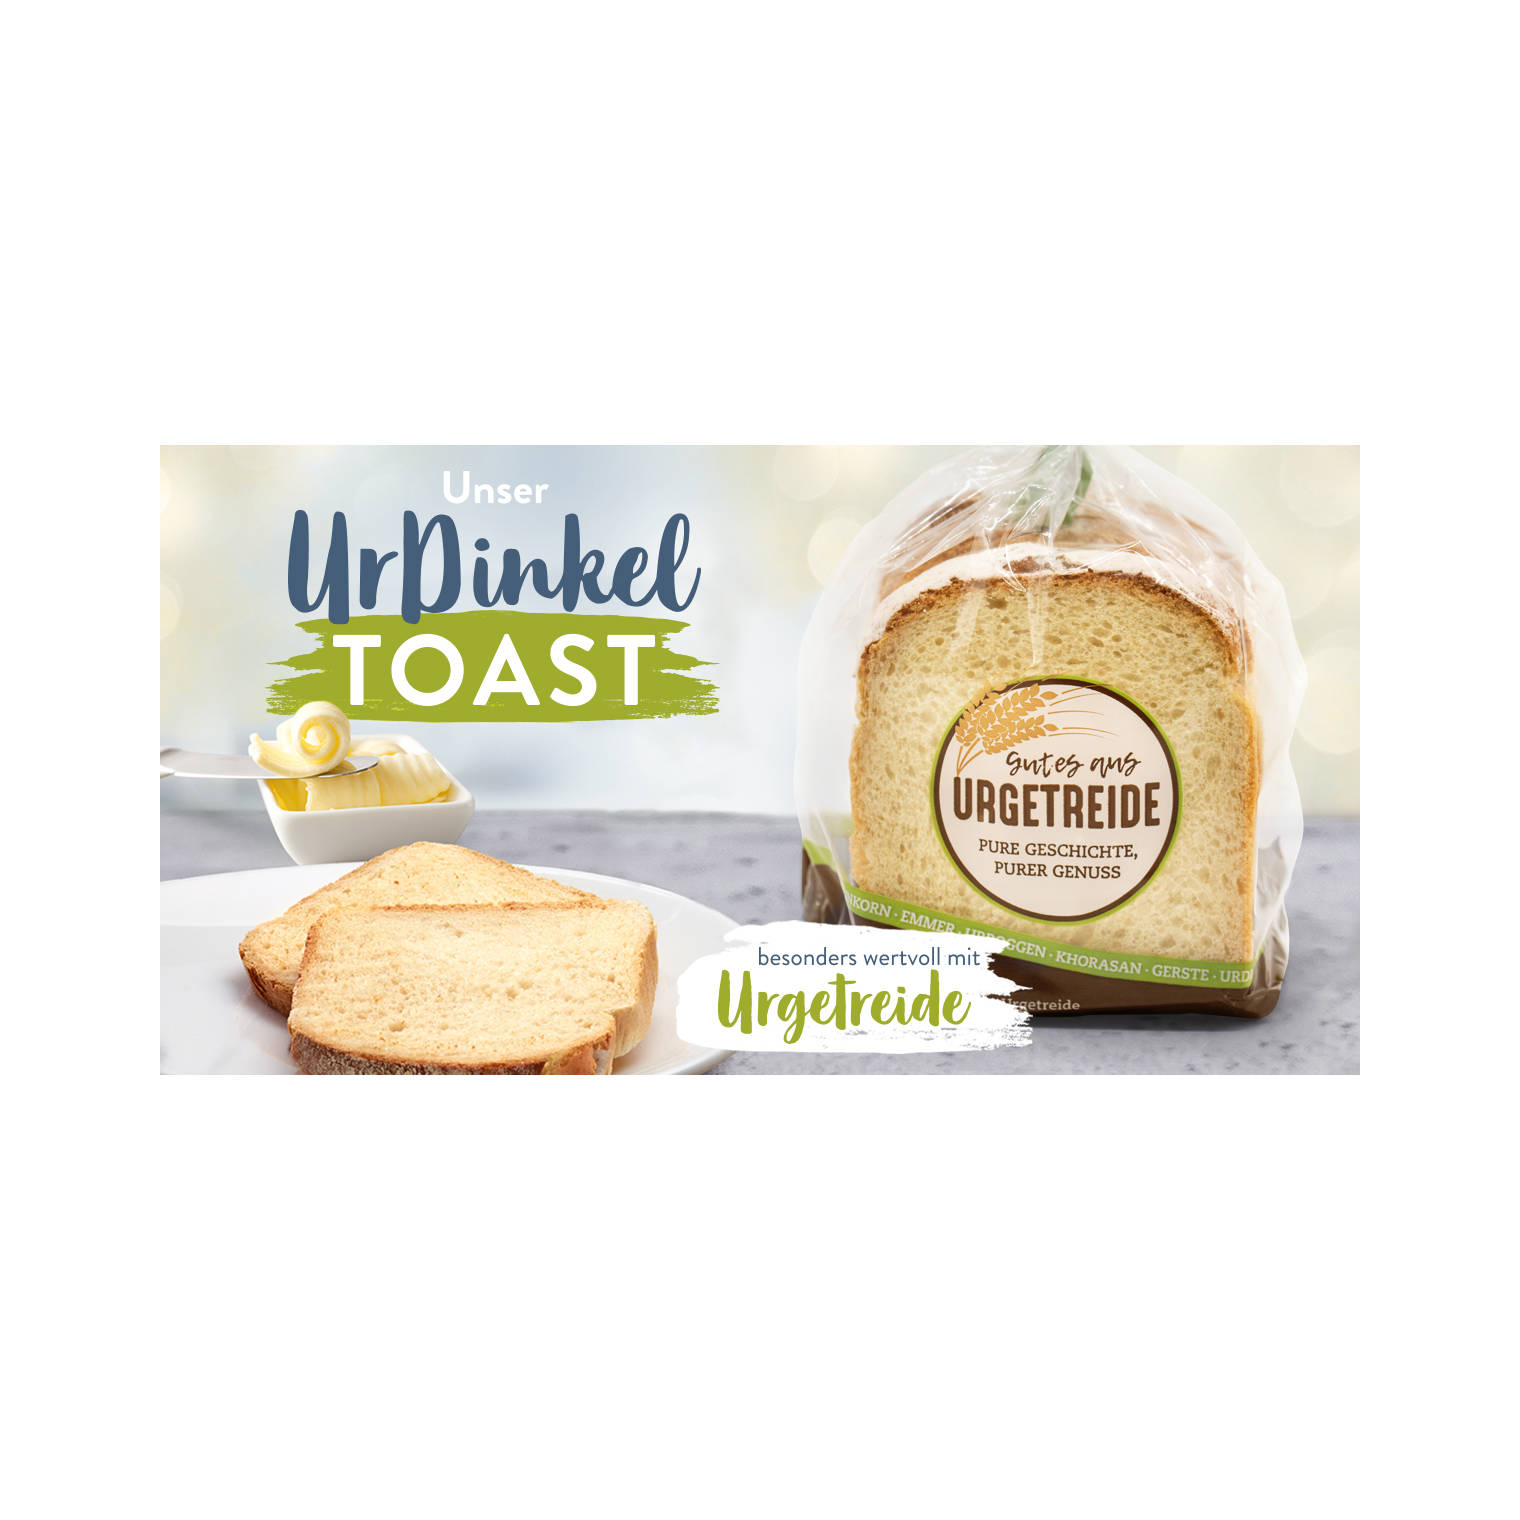 Vorlagen digitale Medien UrDinkel-Toast im Polybeutel